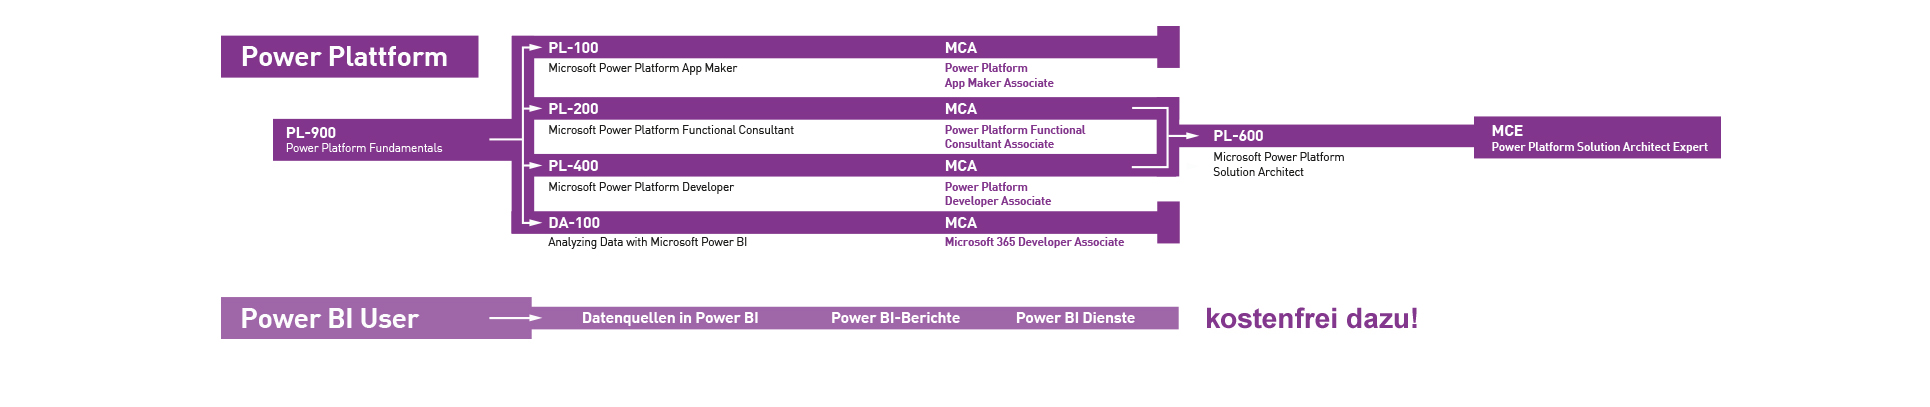 New Horizons - Microsoft Power Platform Zertifizierungen